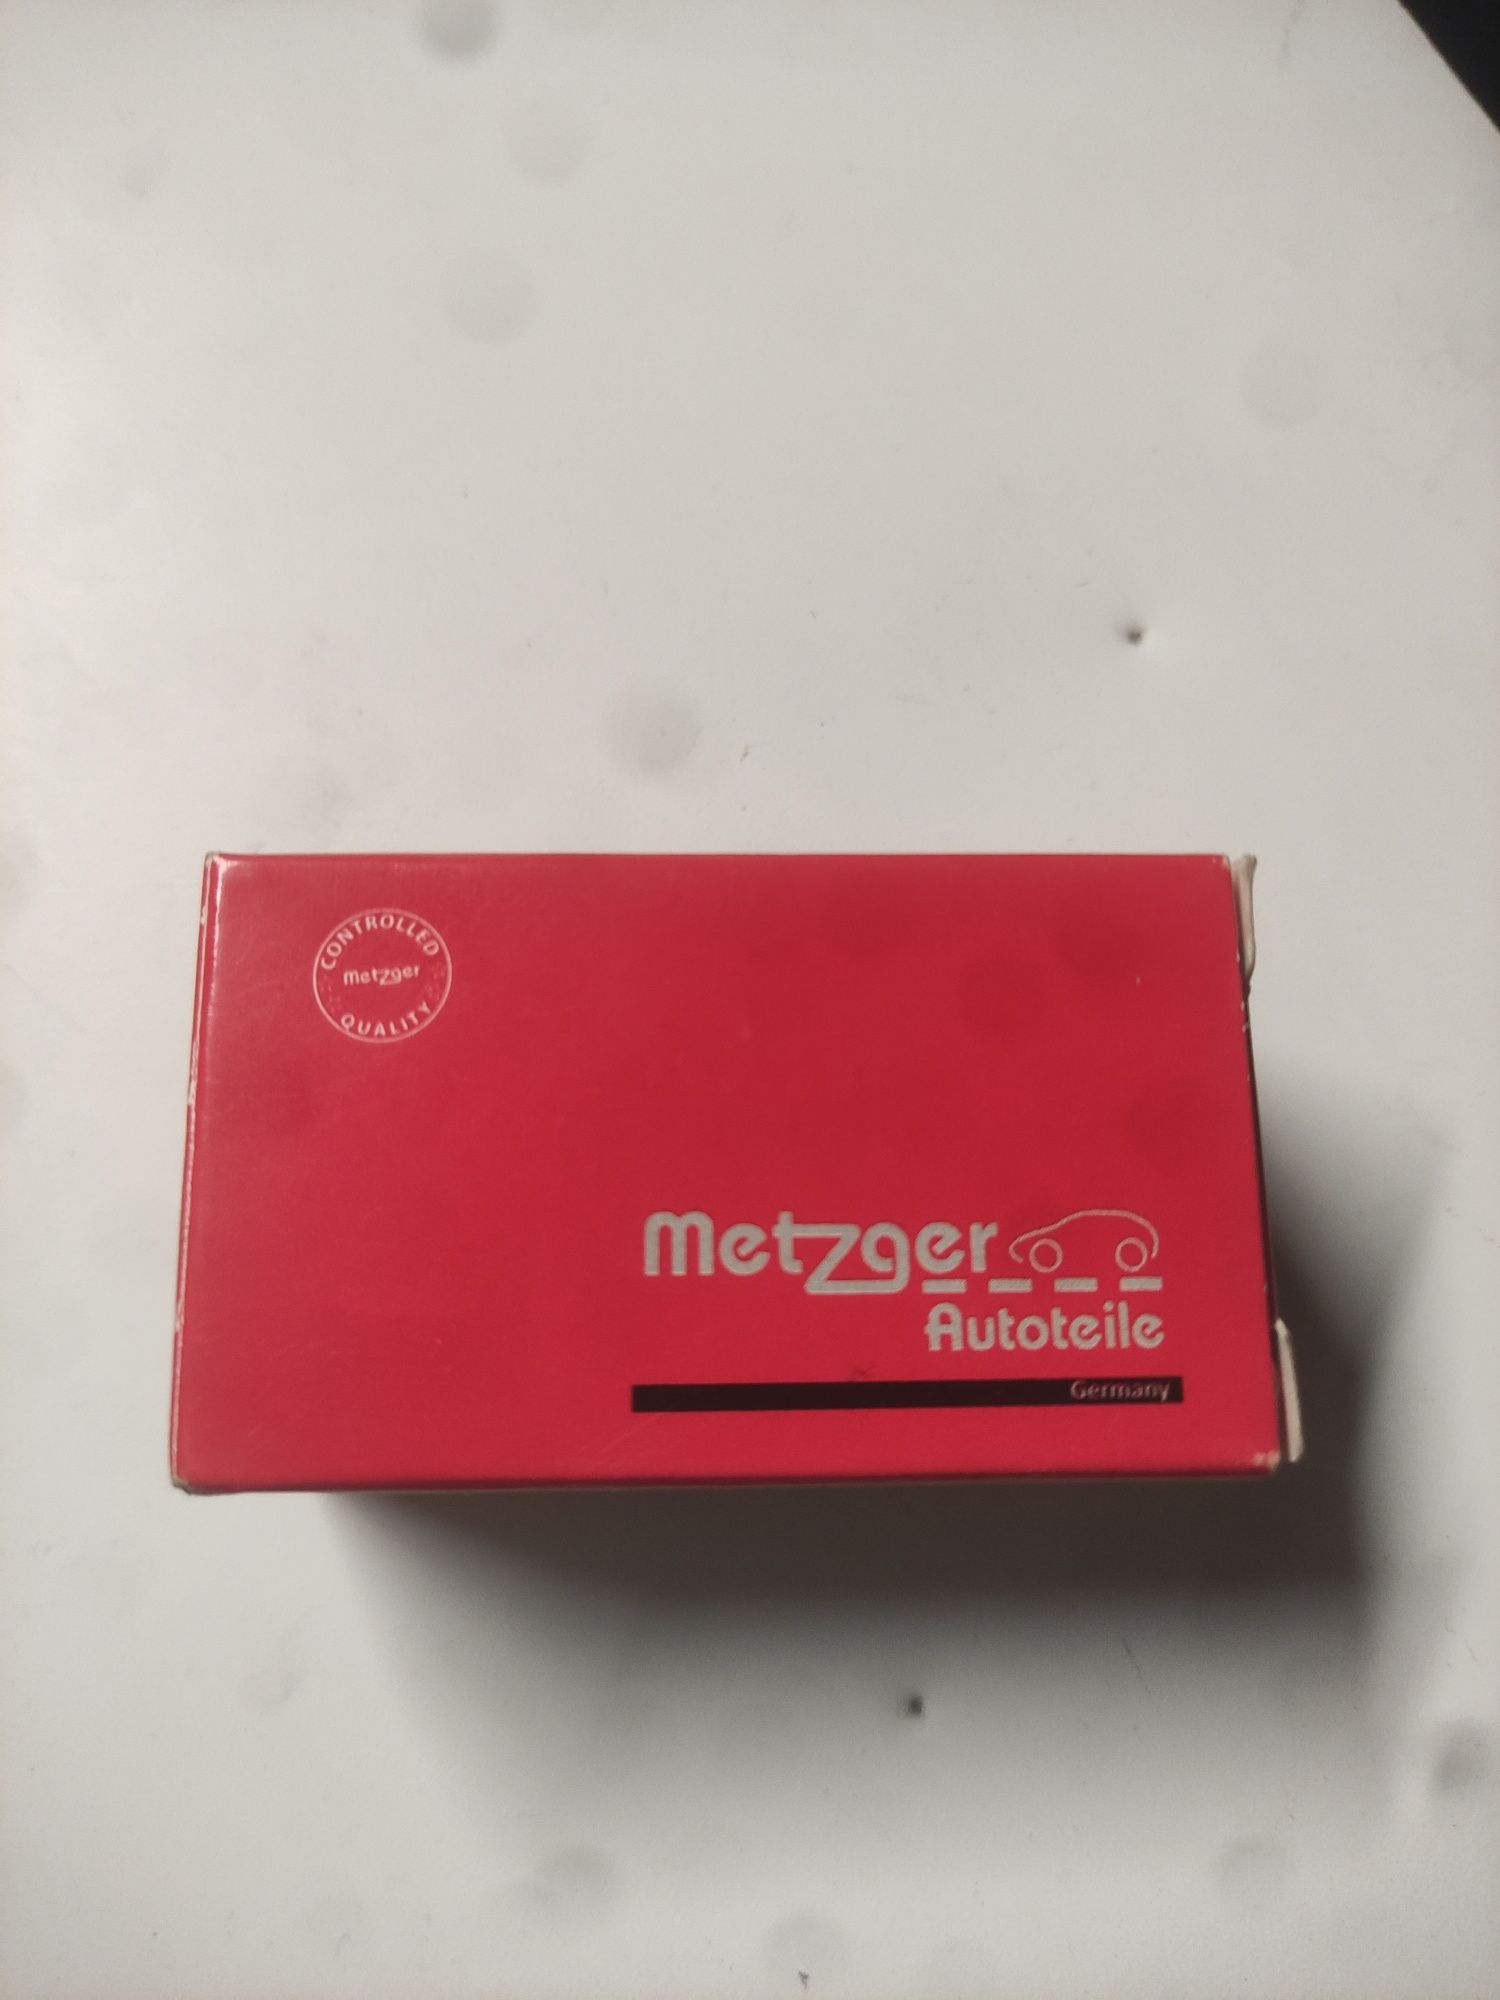 Metzger 0905022

Датчик температуры охлаждающей жидкости